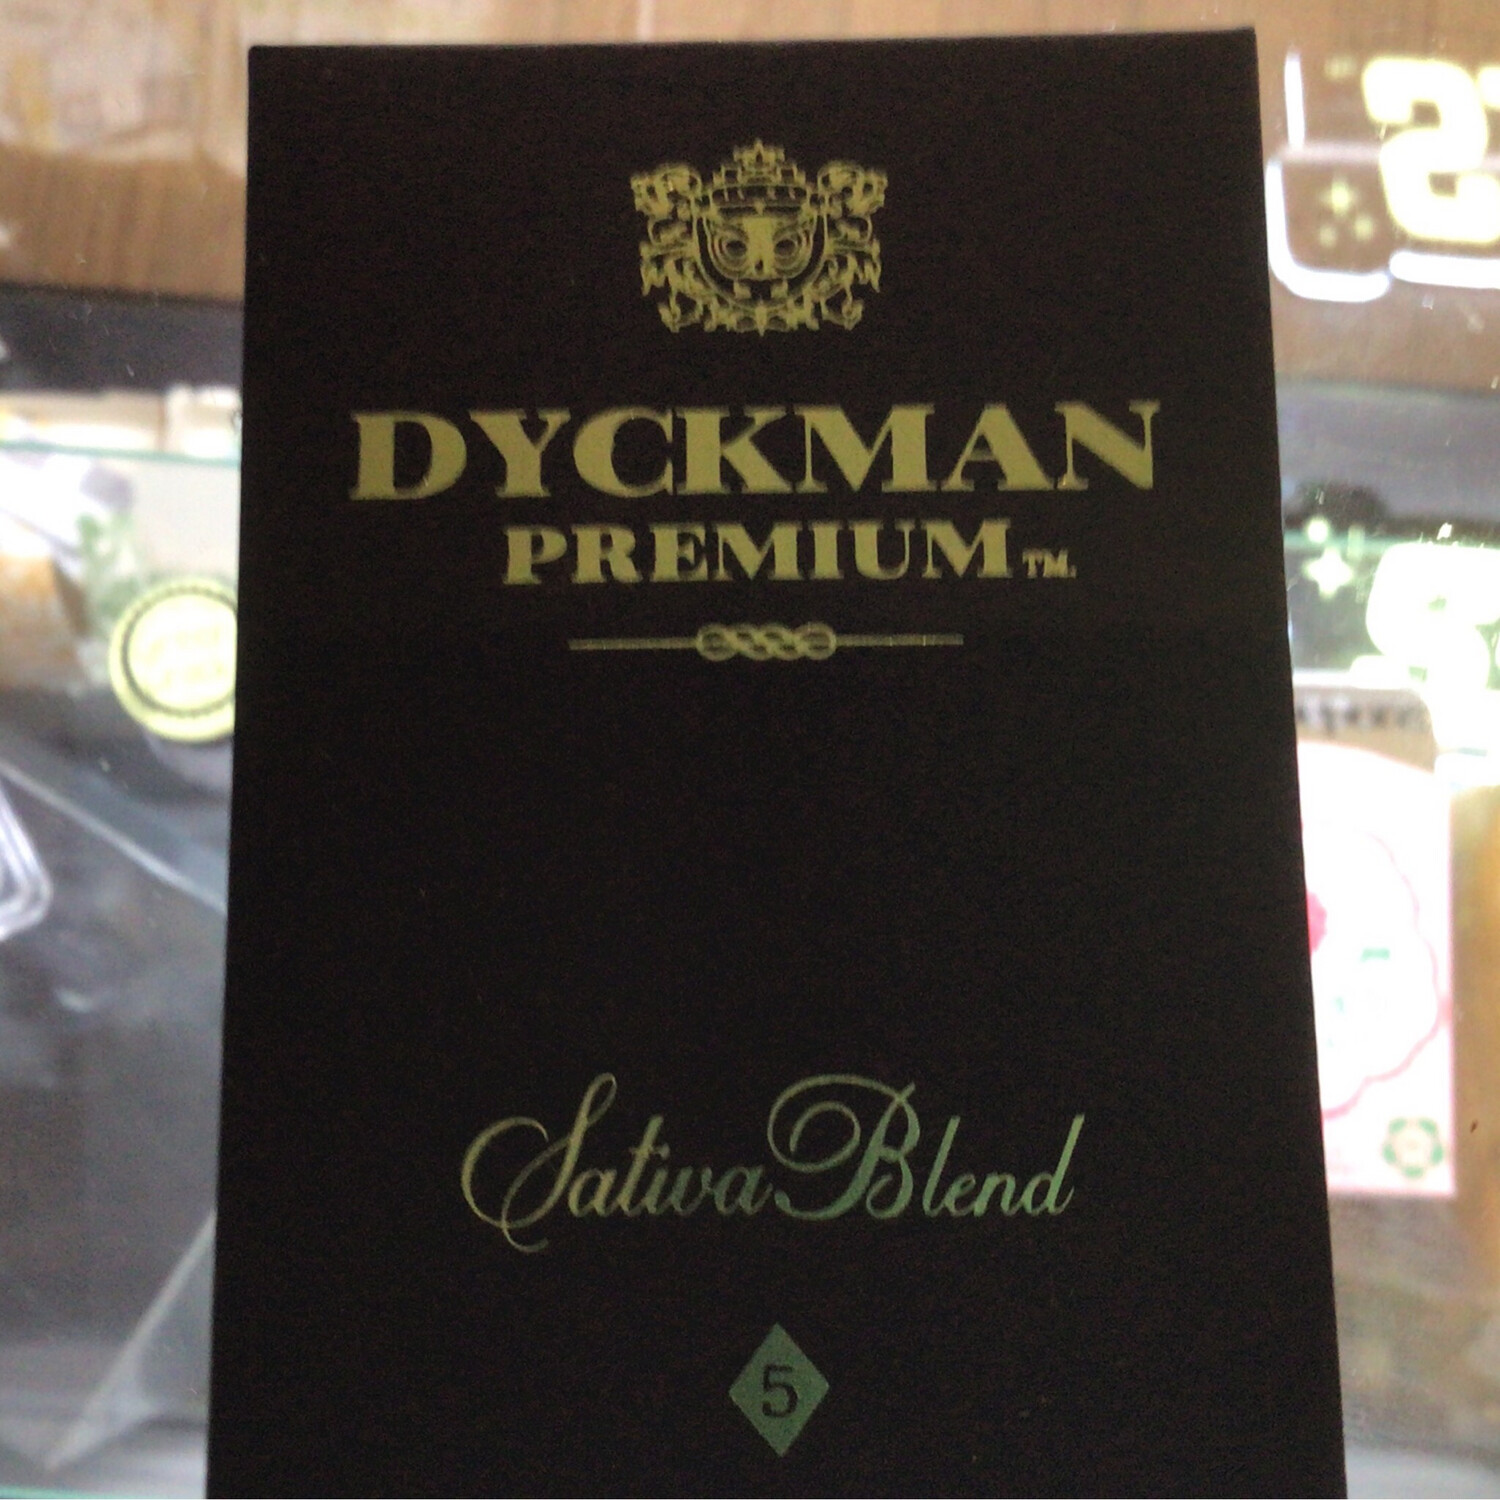 Dykeman Premium Sativa Blend